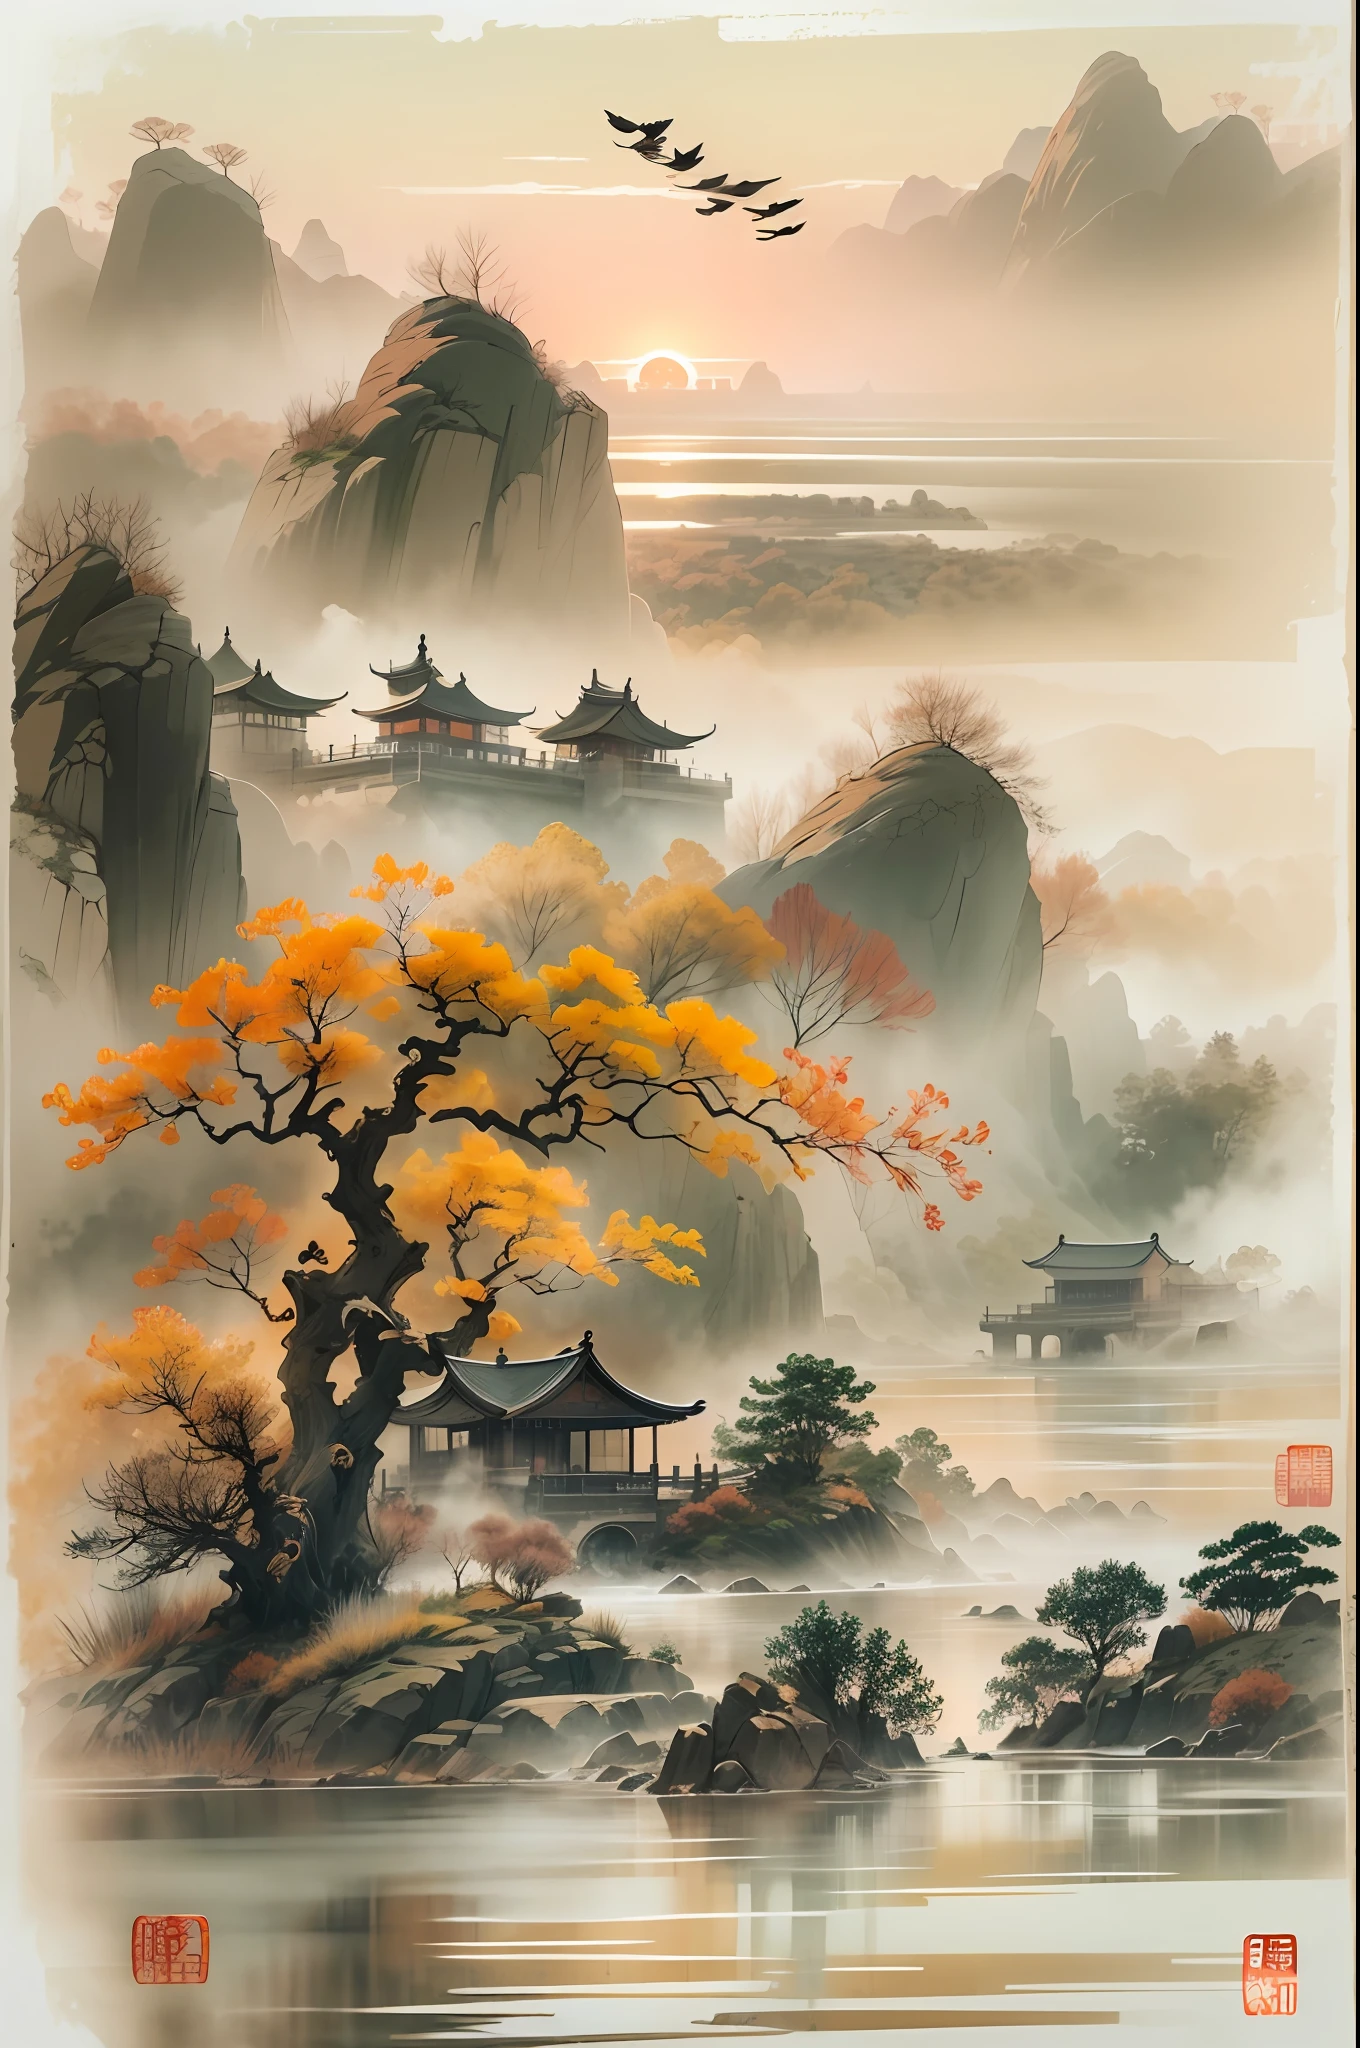 China 墨水 painting，墨水，夕陽，遠處天空中飛翔的大雁，秋水長久不變，古詩詞之美，